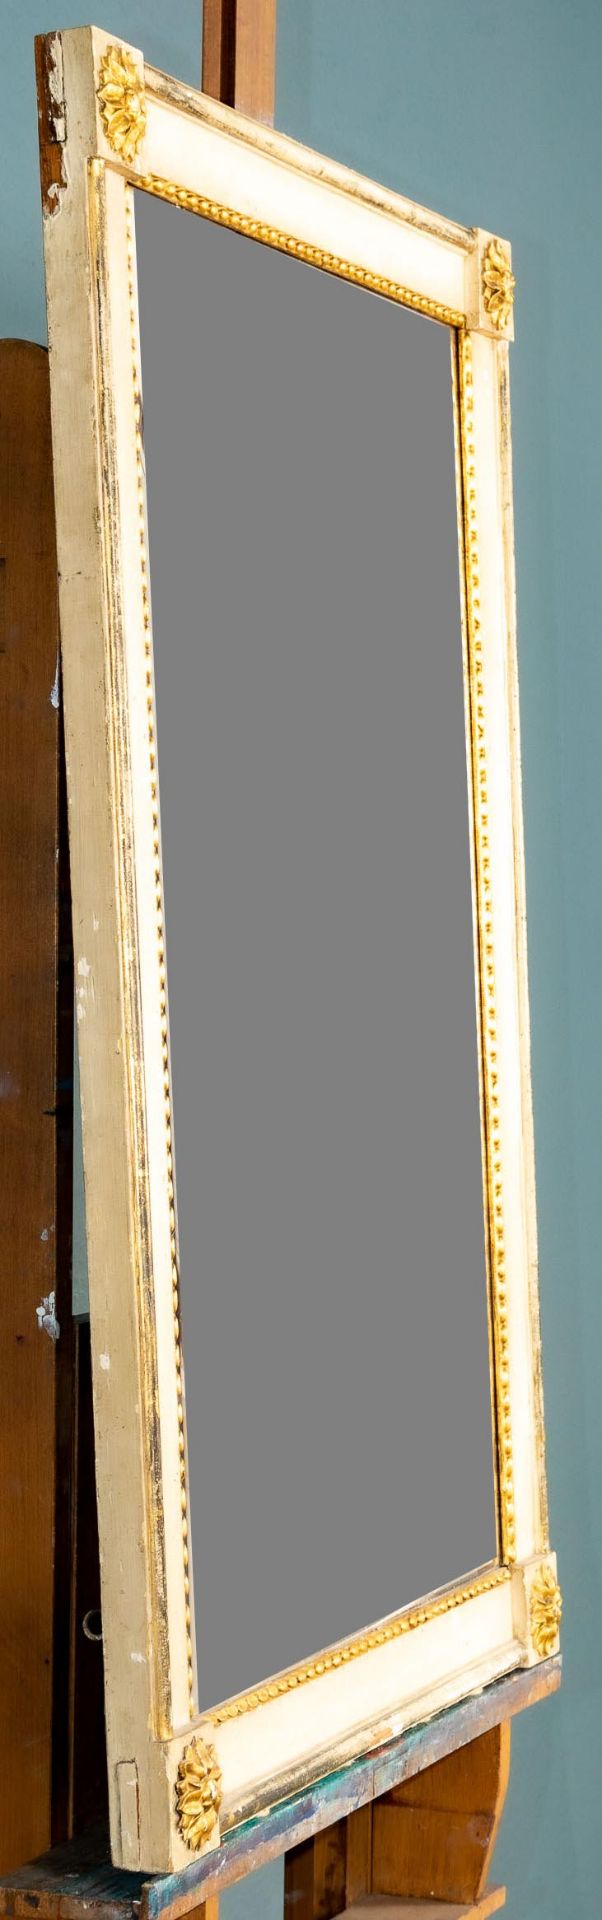 Eleganter Empire-Spiegelrahmen in klassizistischer Formgebung, altweiß gefasst und partiell vergold - Bild 4 aus 6